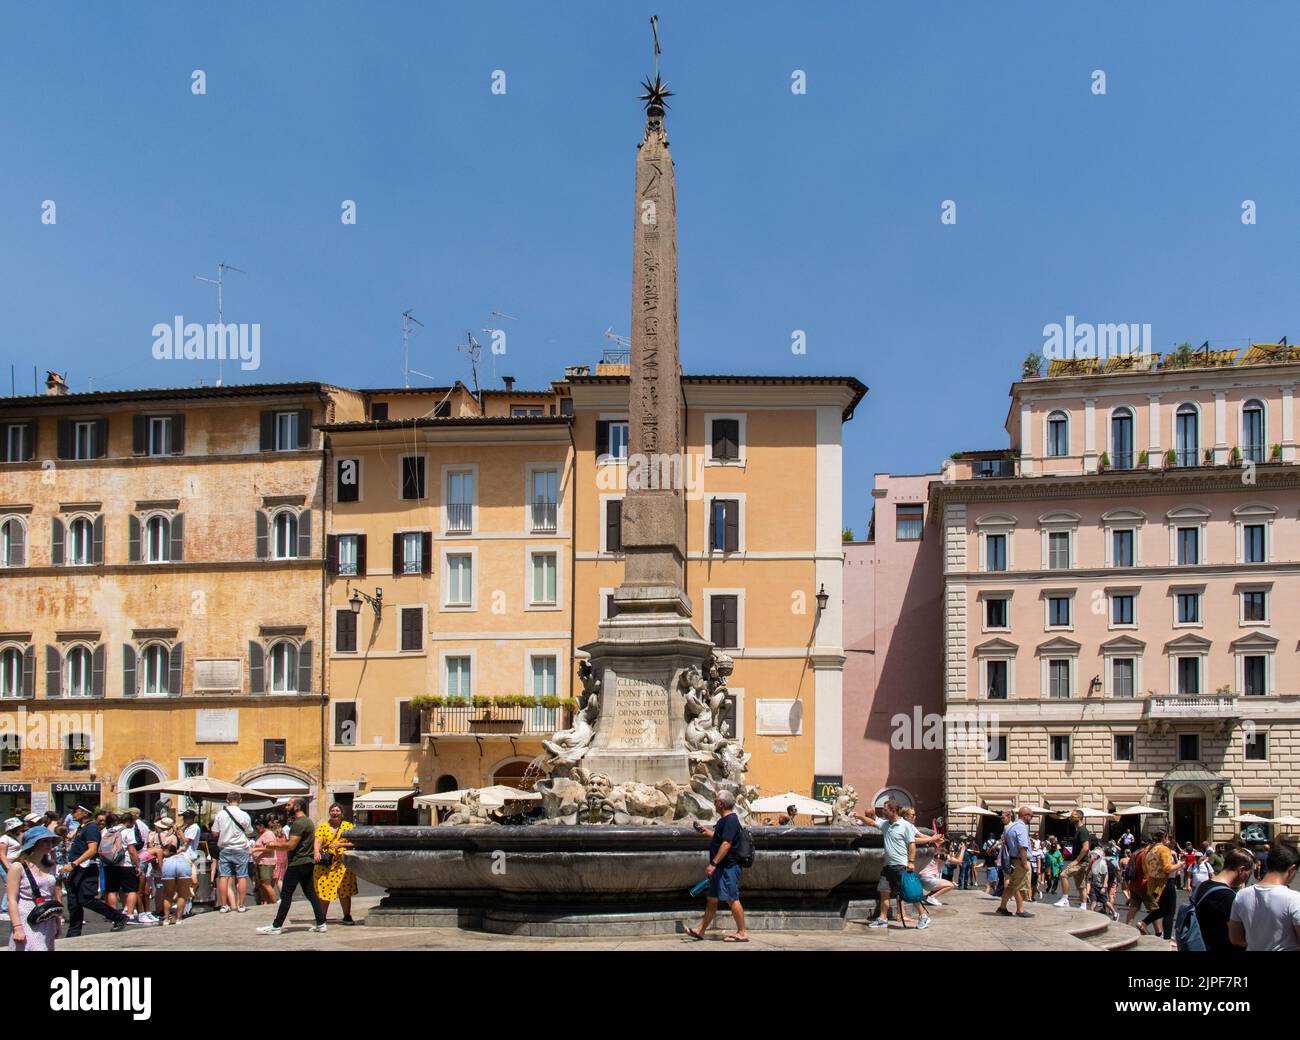 Water font and obelisc at Piazza de la Rotonda, Rome Stock Photo